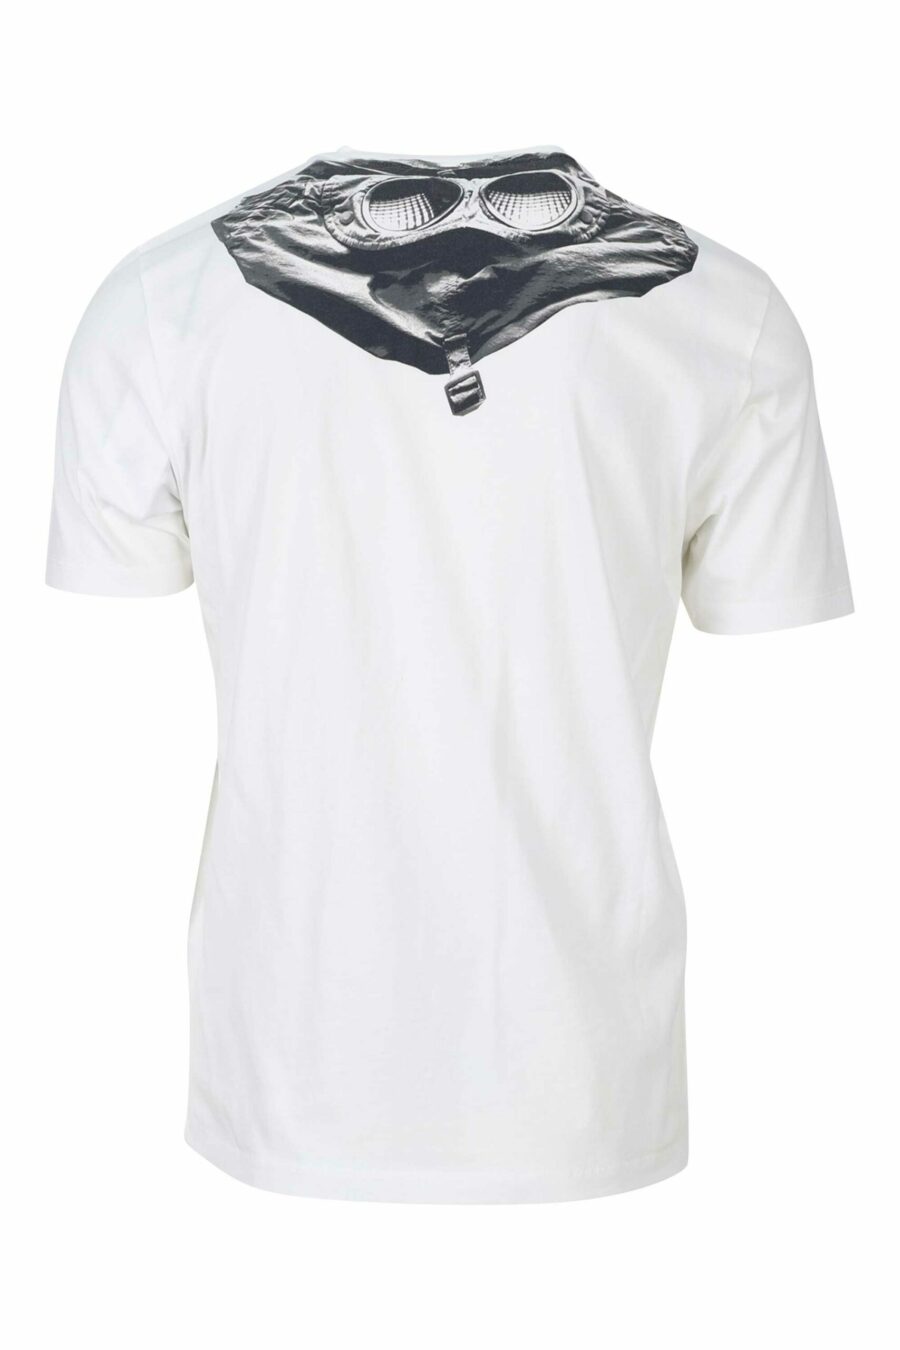 Camiseta blanca con capucha y logo parche - 7620943570397 1 1 scaled